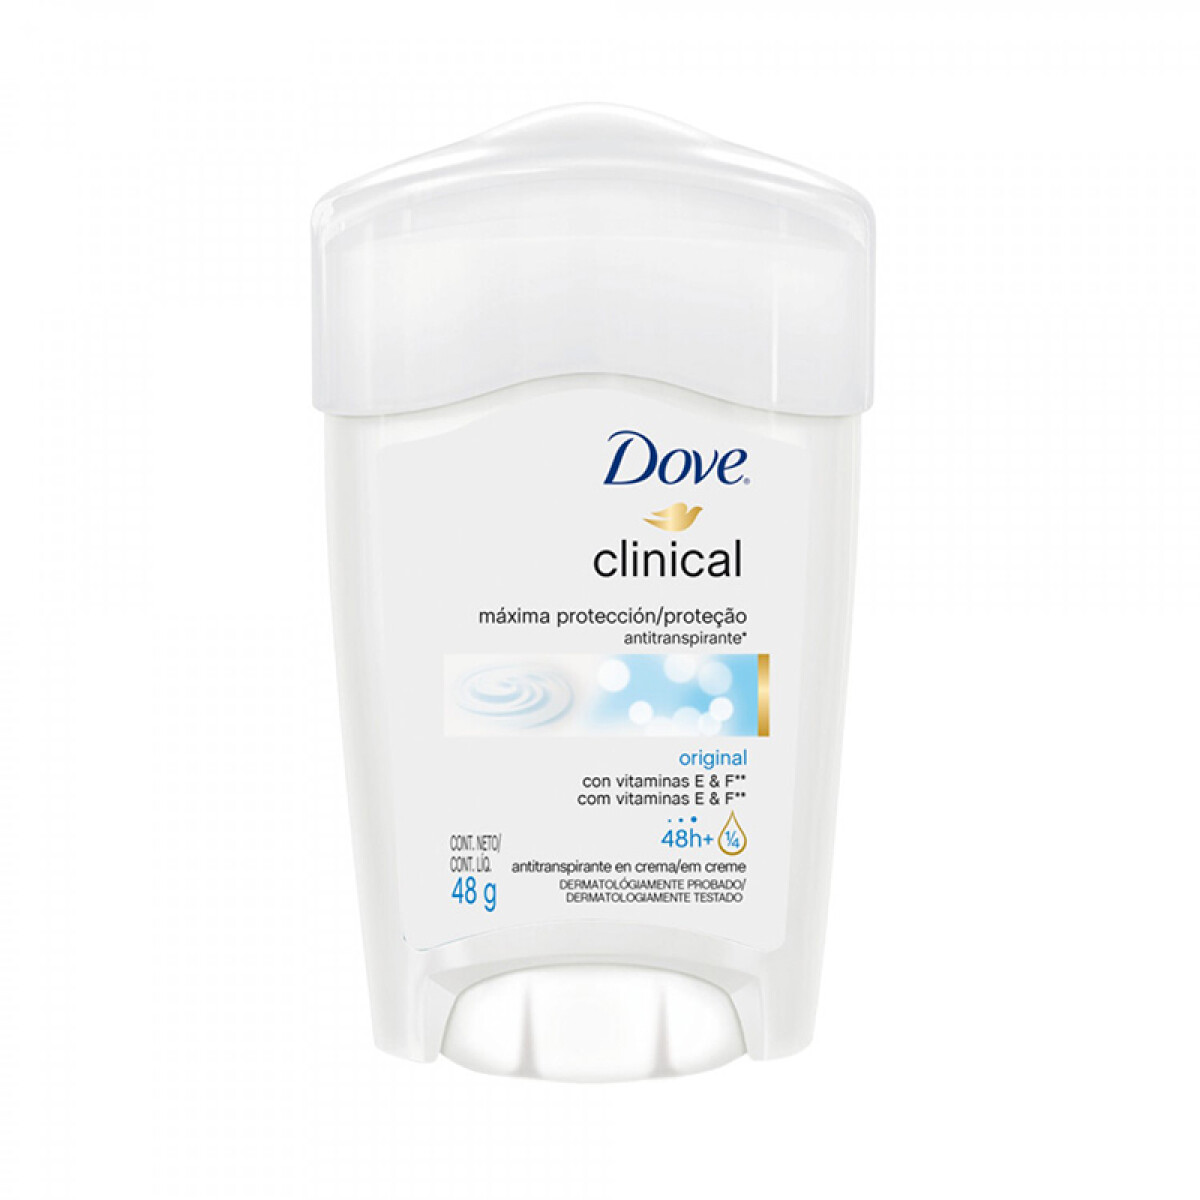 Dove Clinical antitranspirante - en barra 